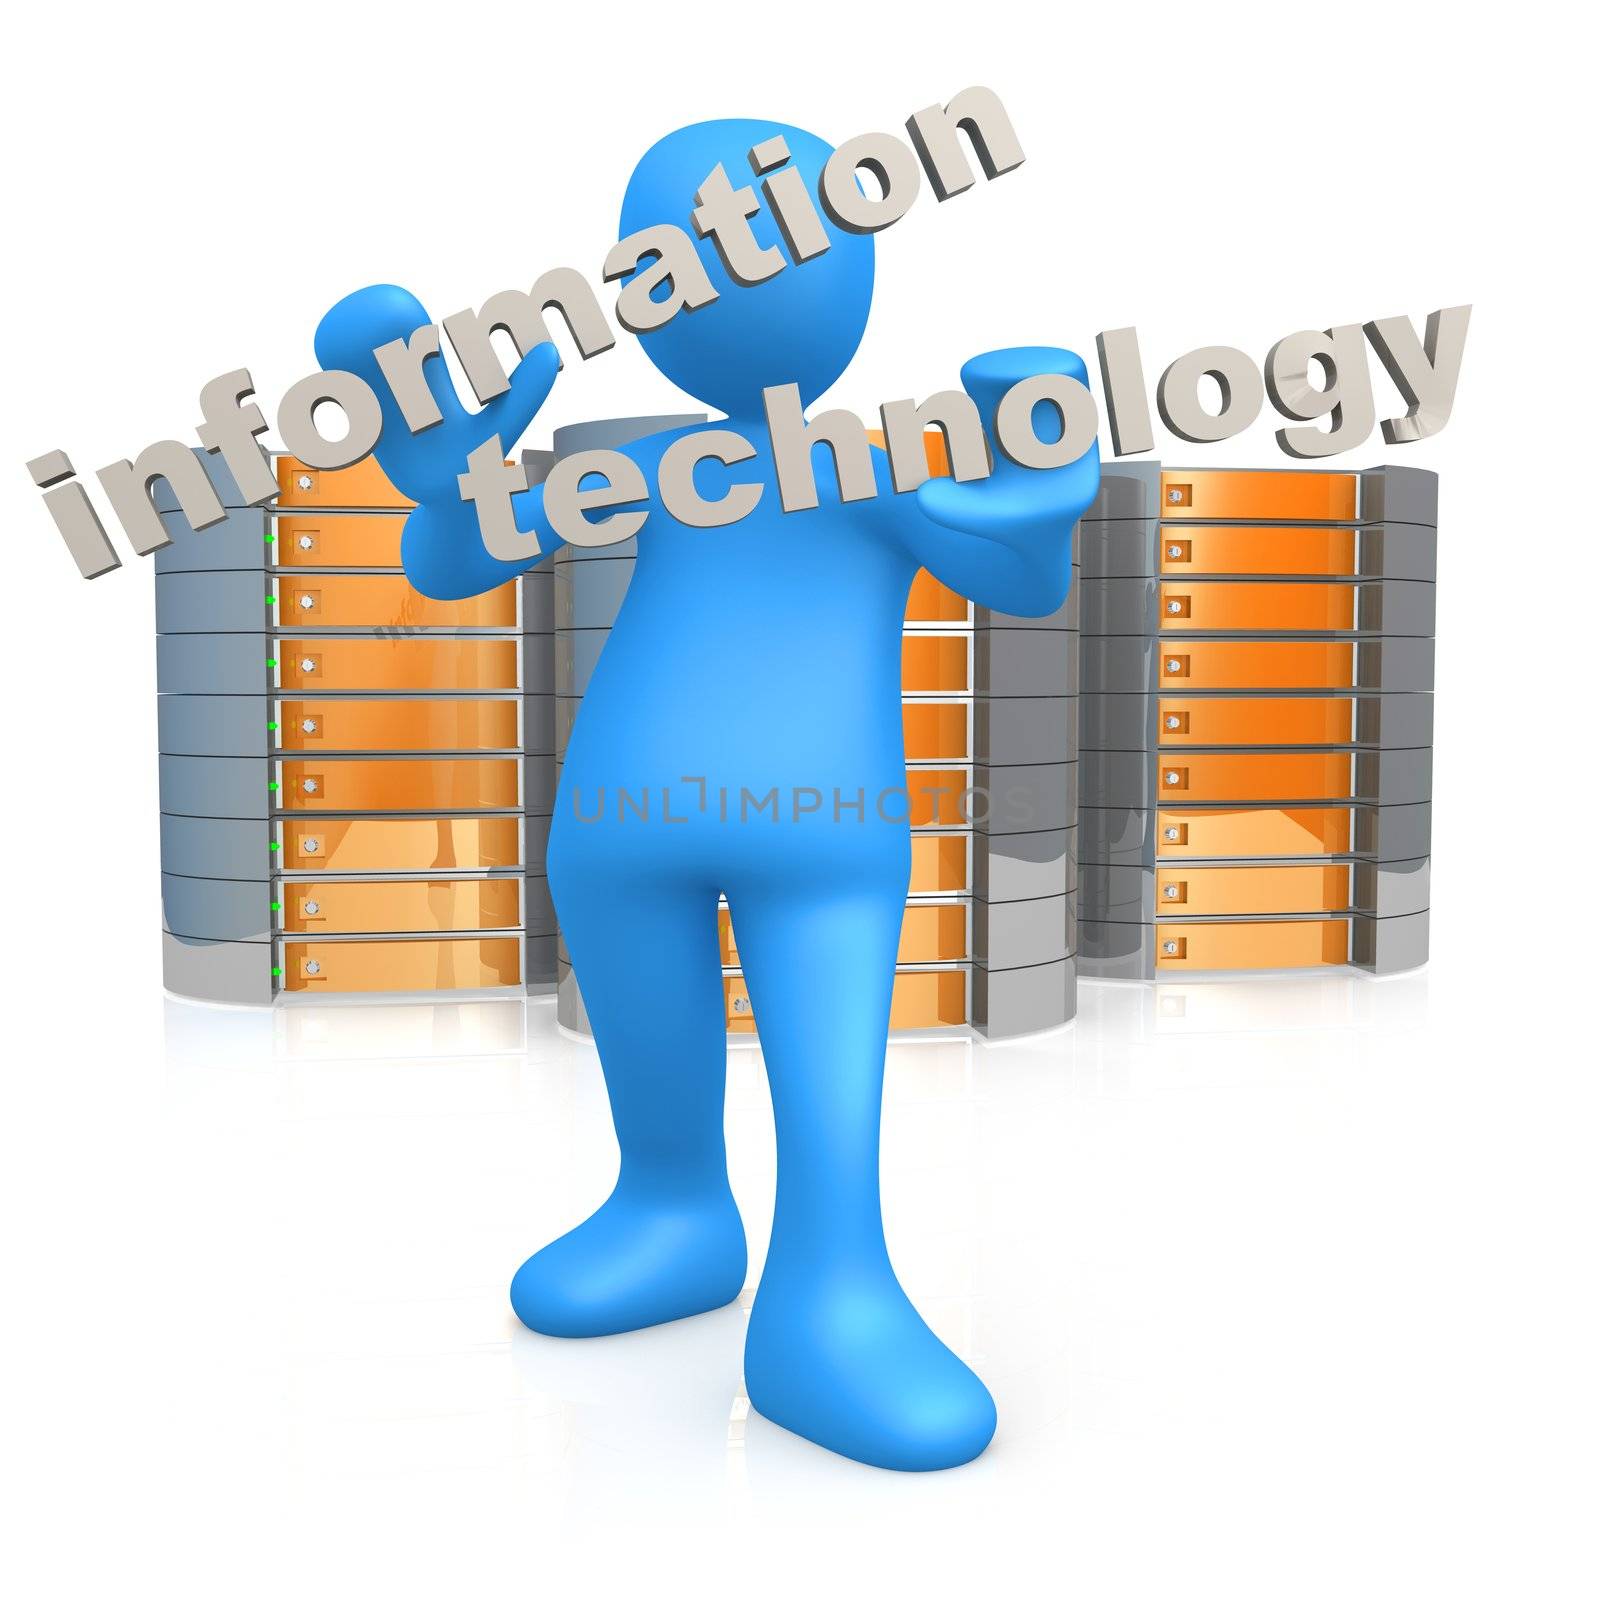 Information Technology by 3pod